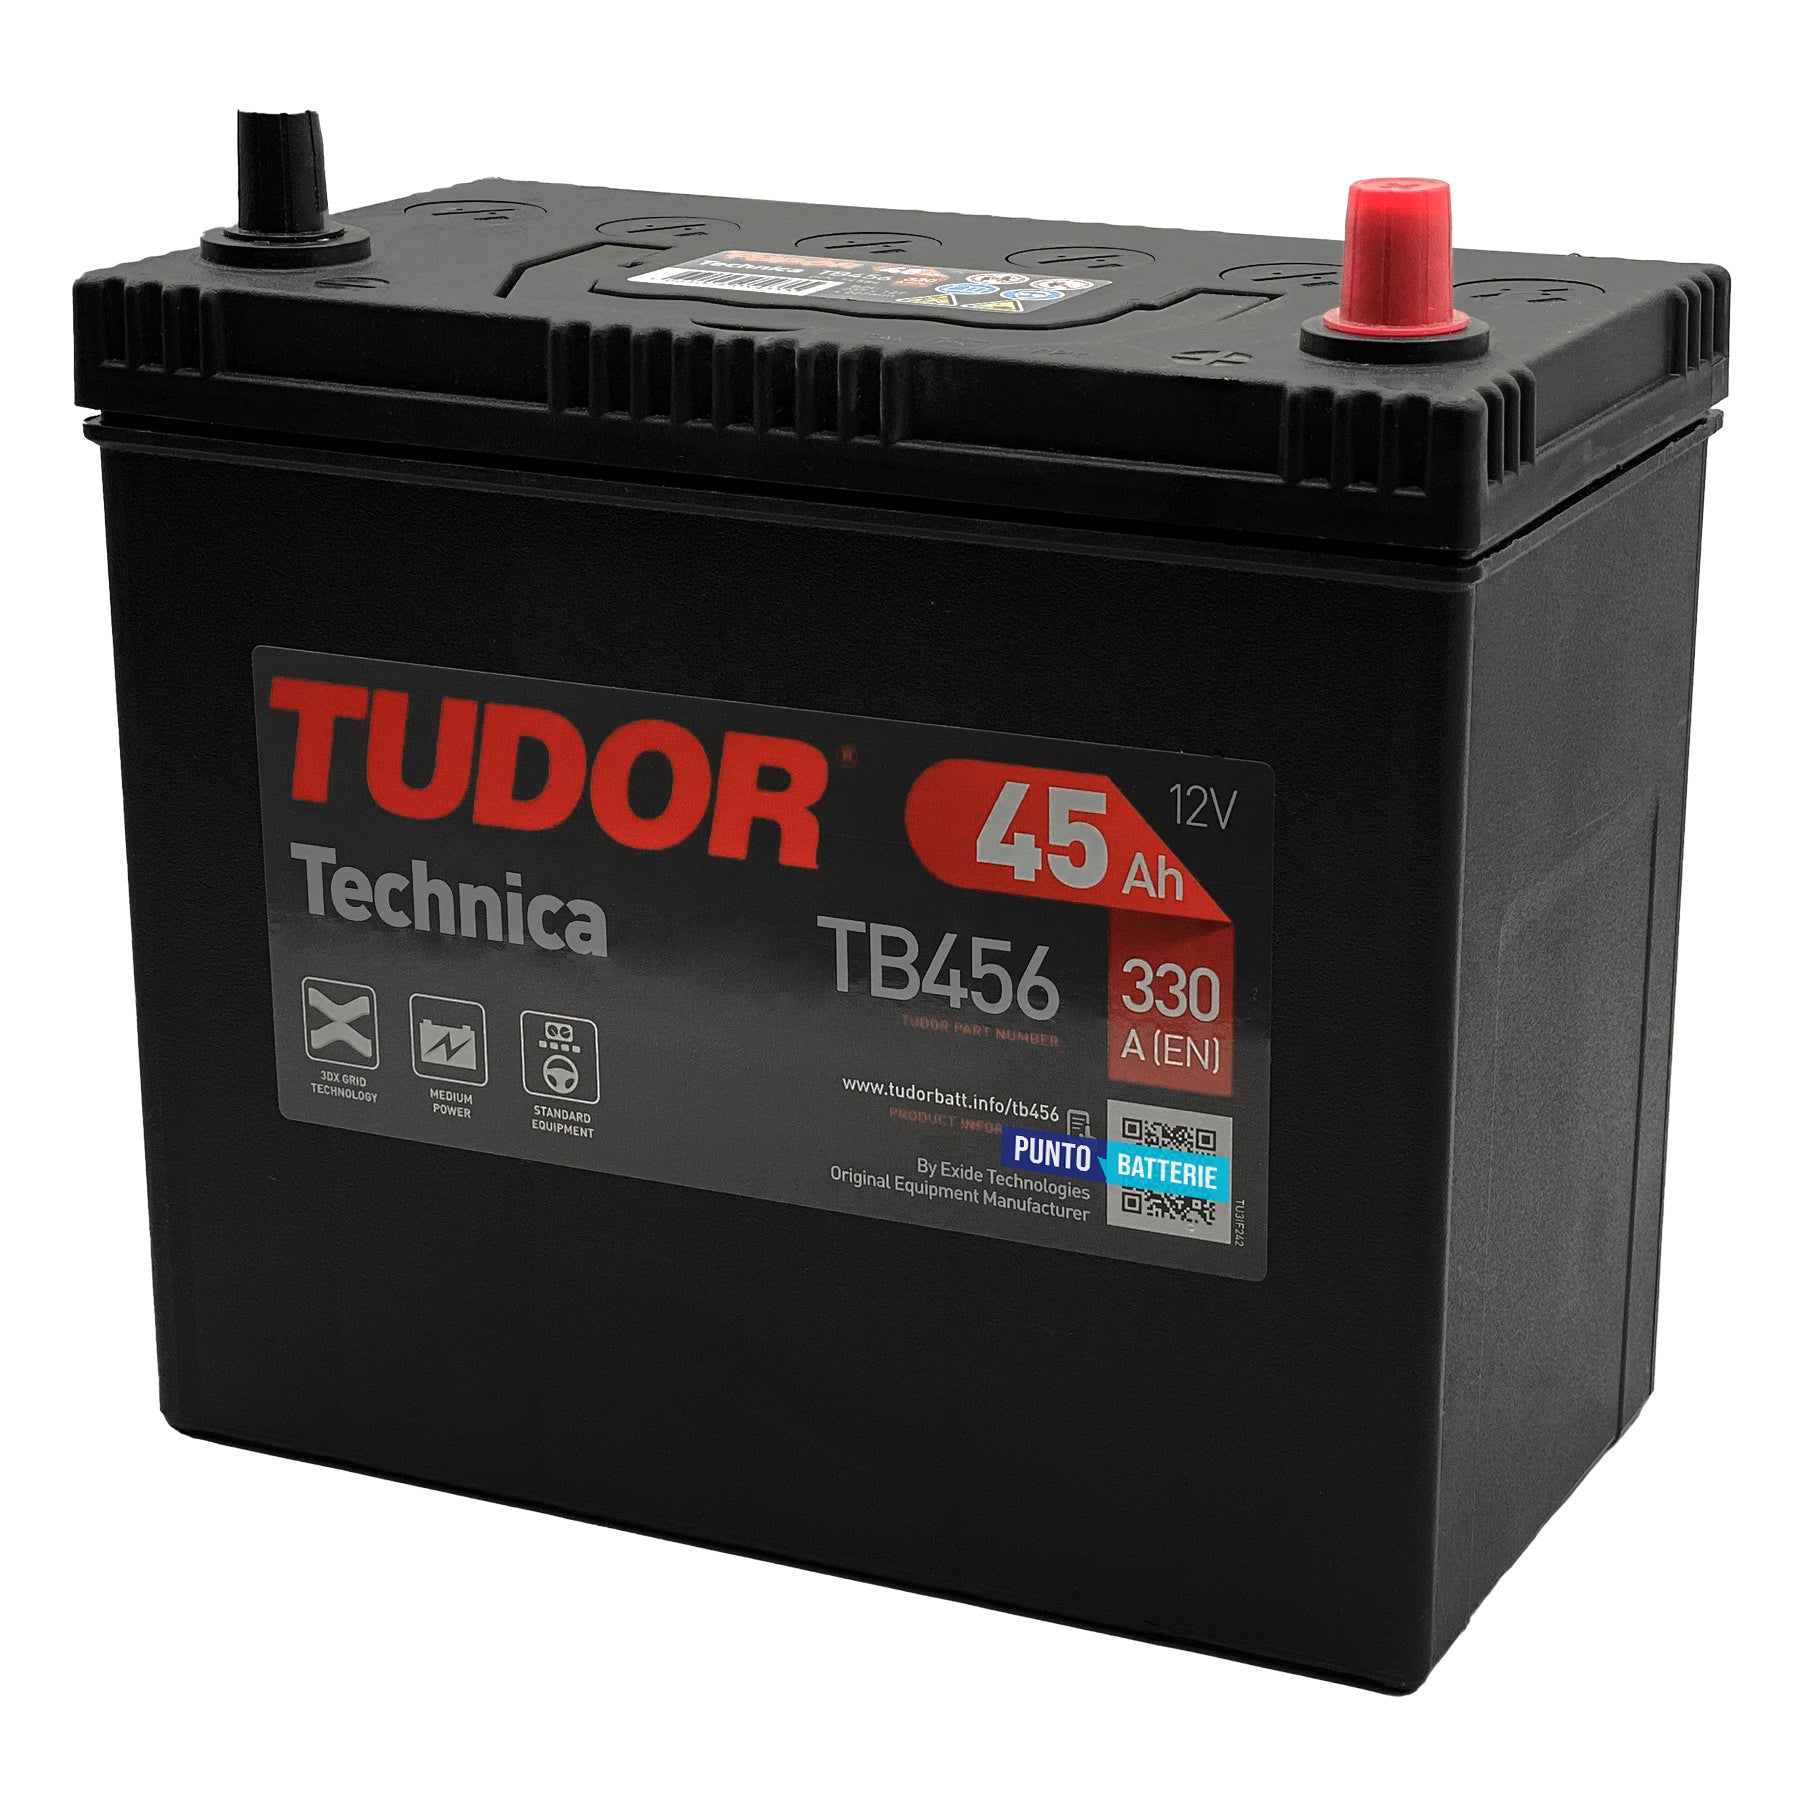 Batteria originale Tudor Technica TB456, dimensioni 237 x 127 x 227, polo positivo a destra, 12 volt, 45 amperora, 330 ampere. Batteria per auto e veicoli leggeri.